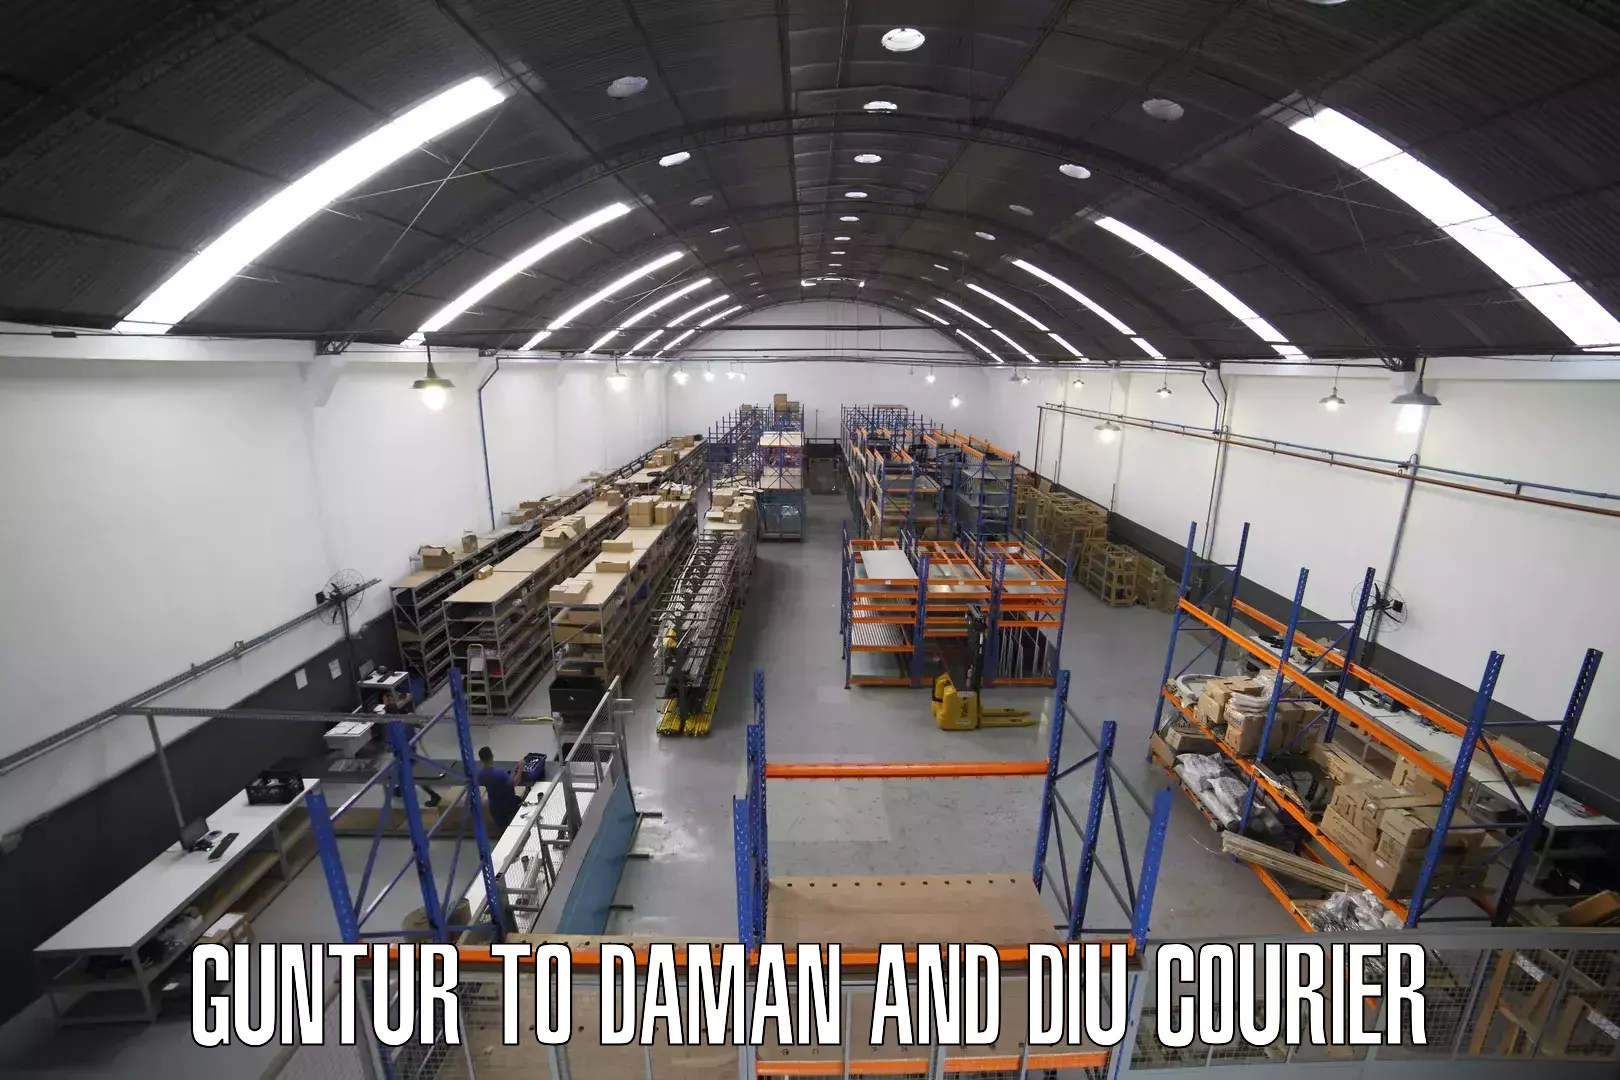 Express courier facilities Guntur to Daman and Diu